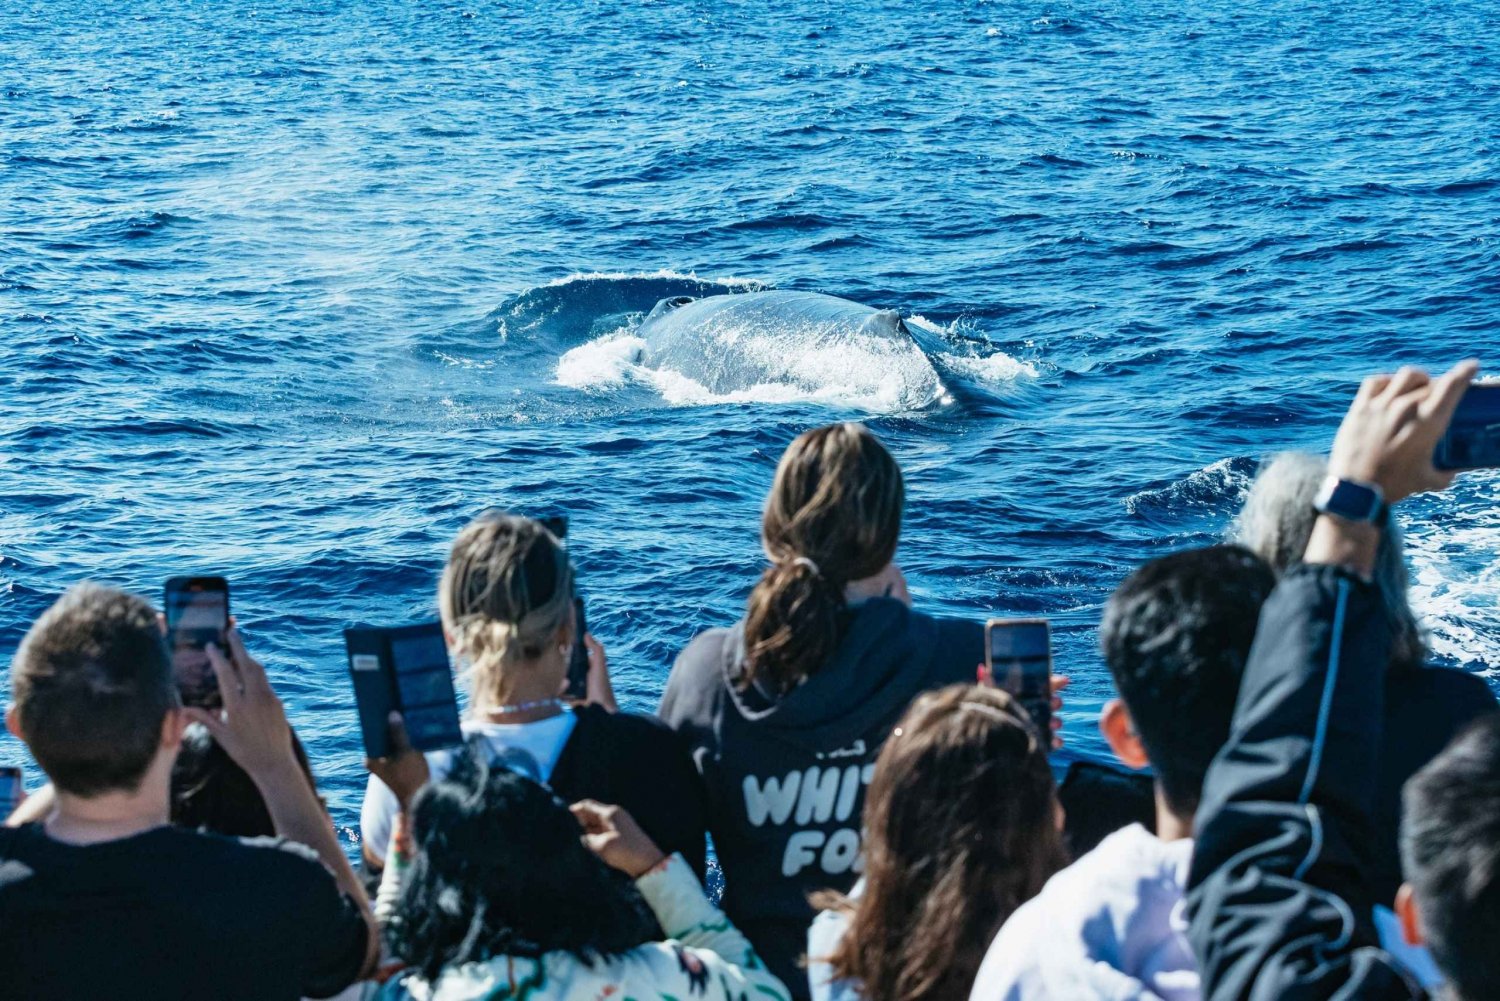 Excursión de 2,5 horas de avistamiento de ballenas Spirit of Gold Coast